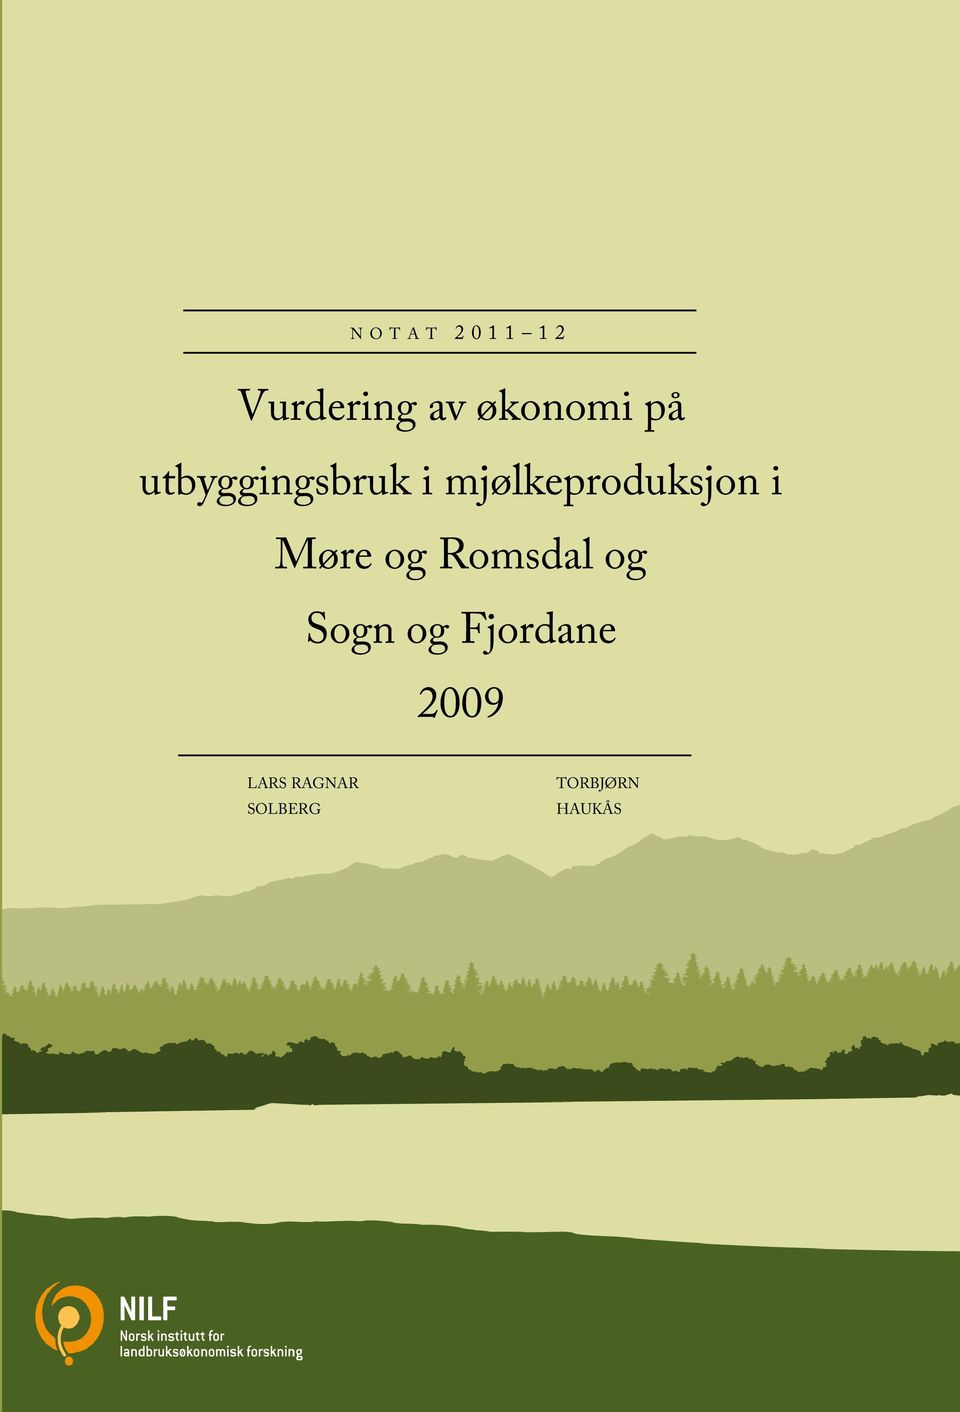 Møre og Romsdal og Sogn og Fjordane